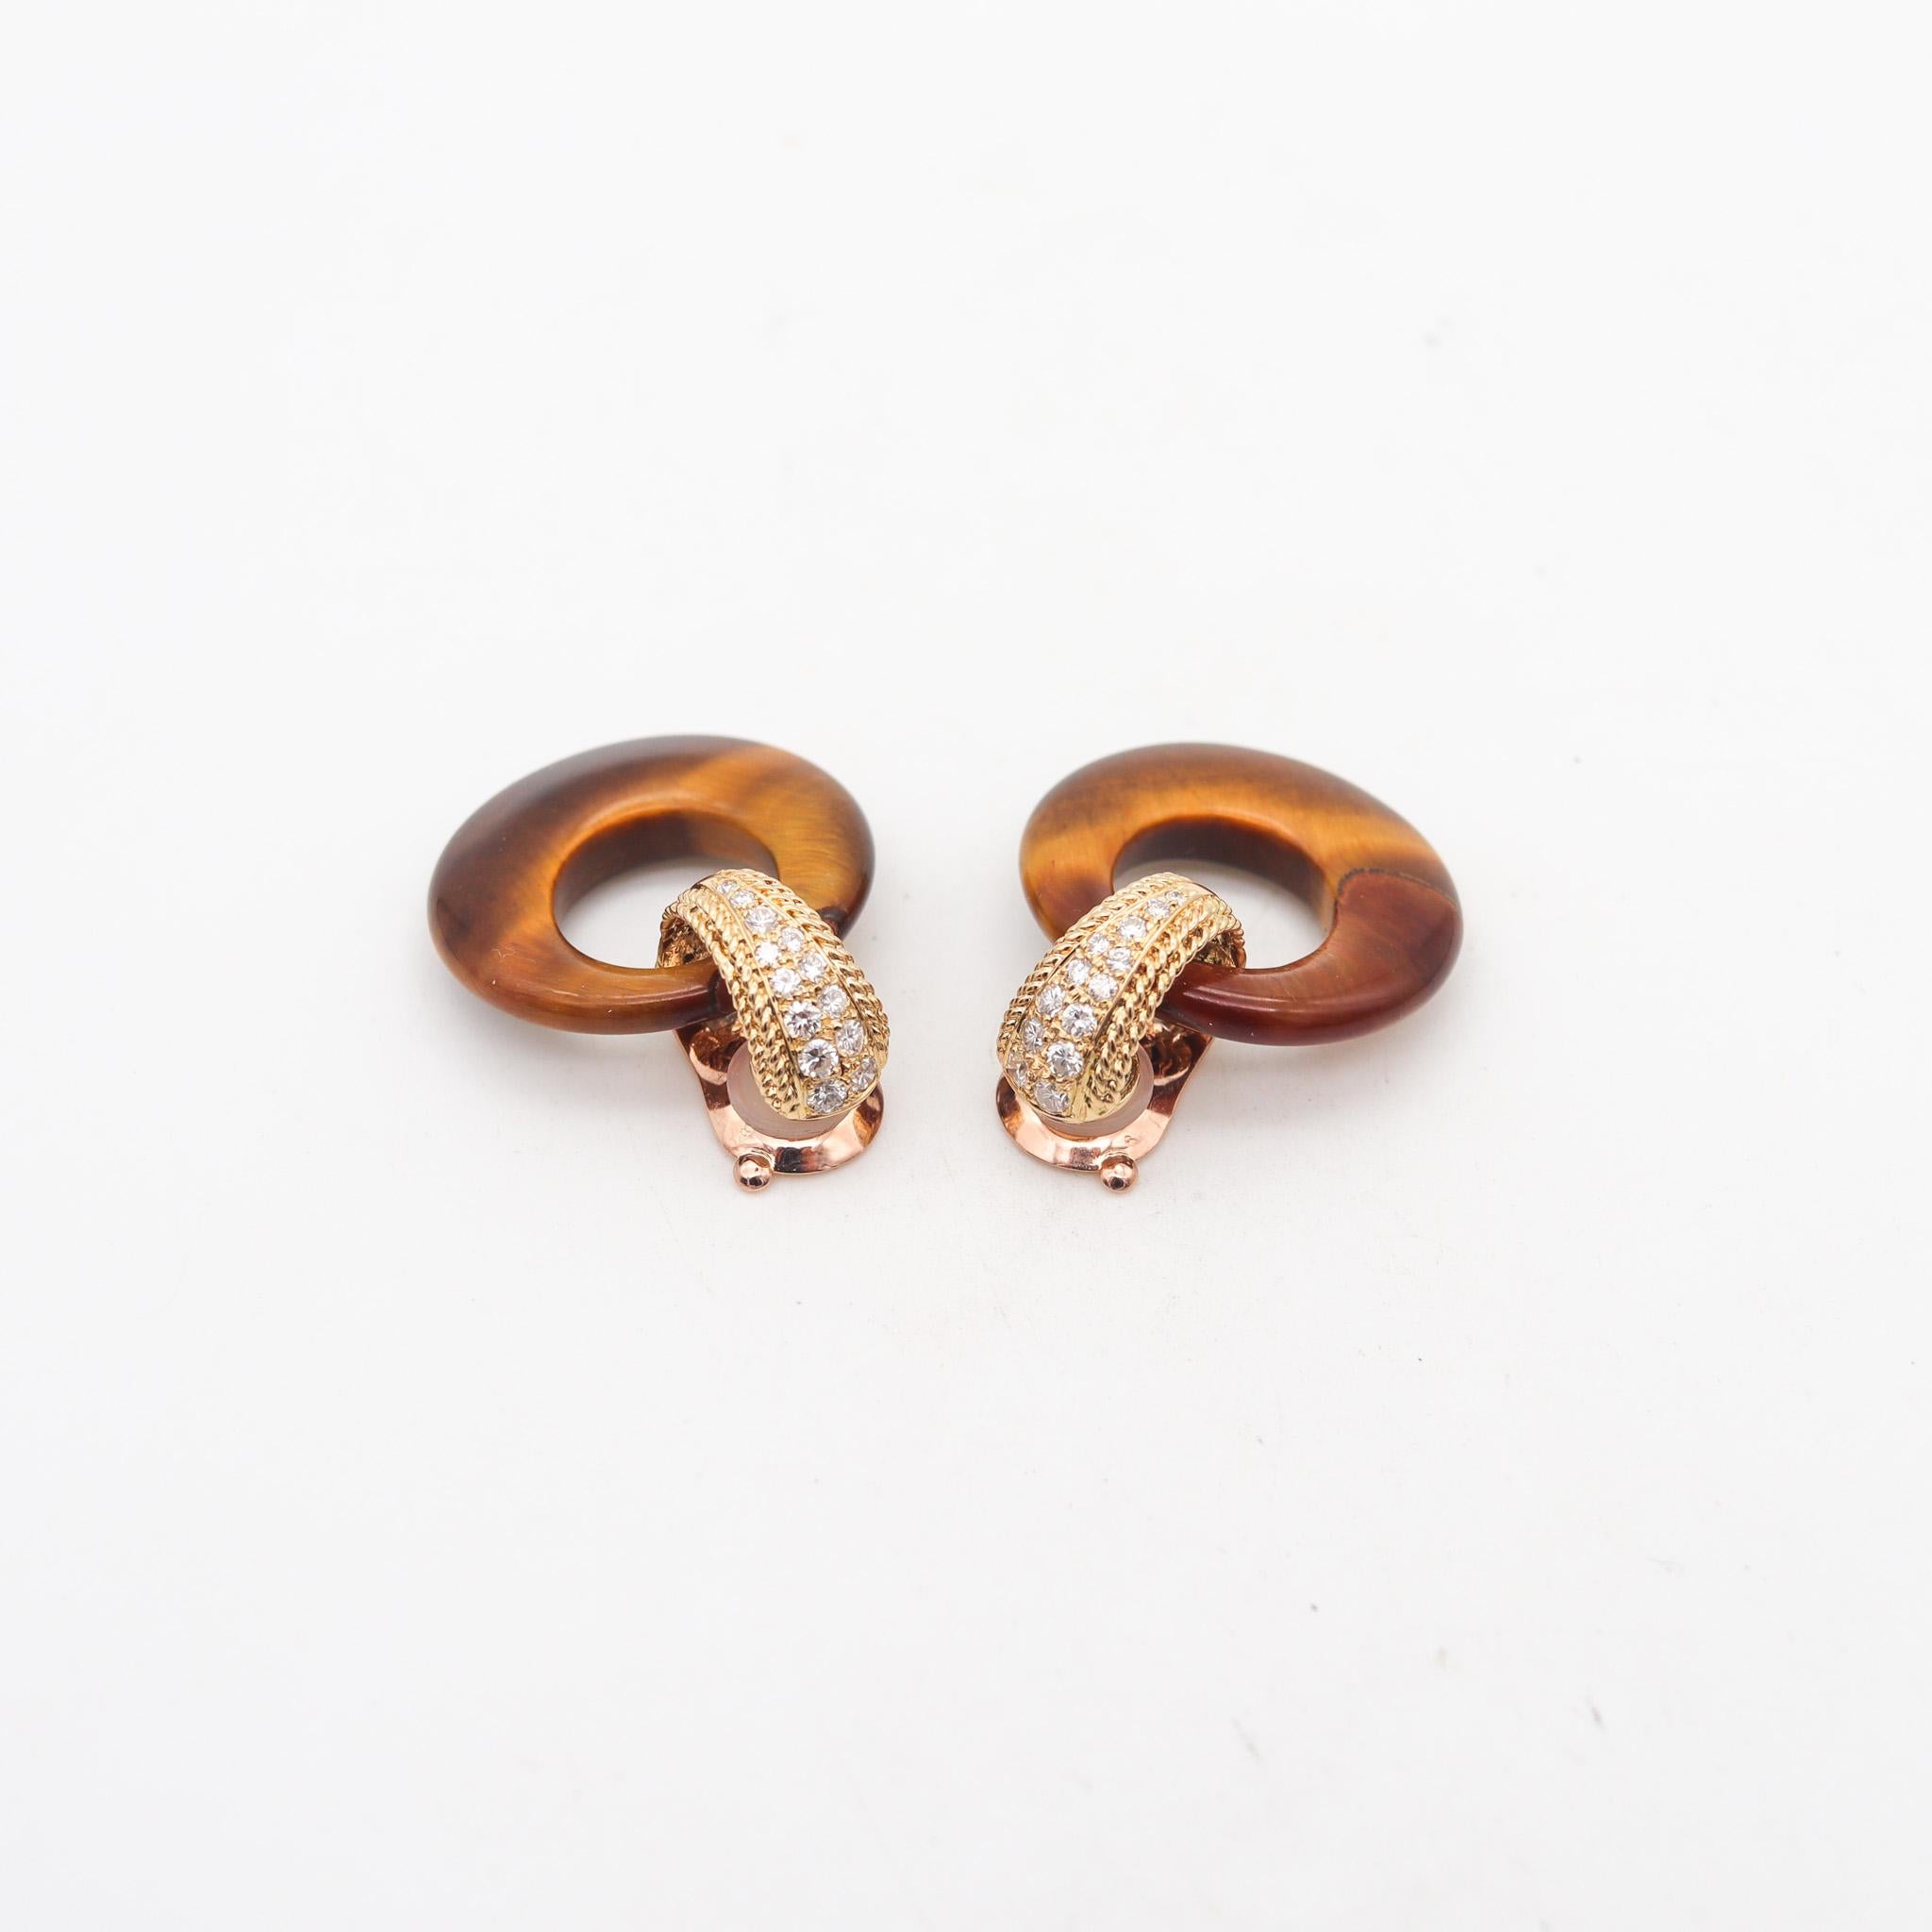 Boucles d'oreilles pendantes transformables conçues par Andre Vassort pour Van Cleef & Arpels.

Magnifique paire de boucles d'oreilles cabriolet, créées à Paris par la maison de joaillerie Van Cleef & Arpels, dans les années 1970. Ces boucles